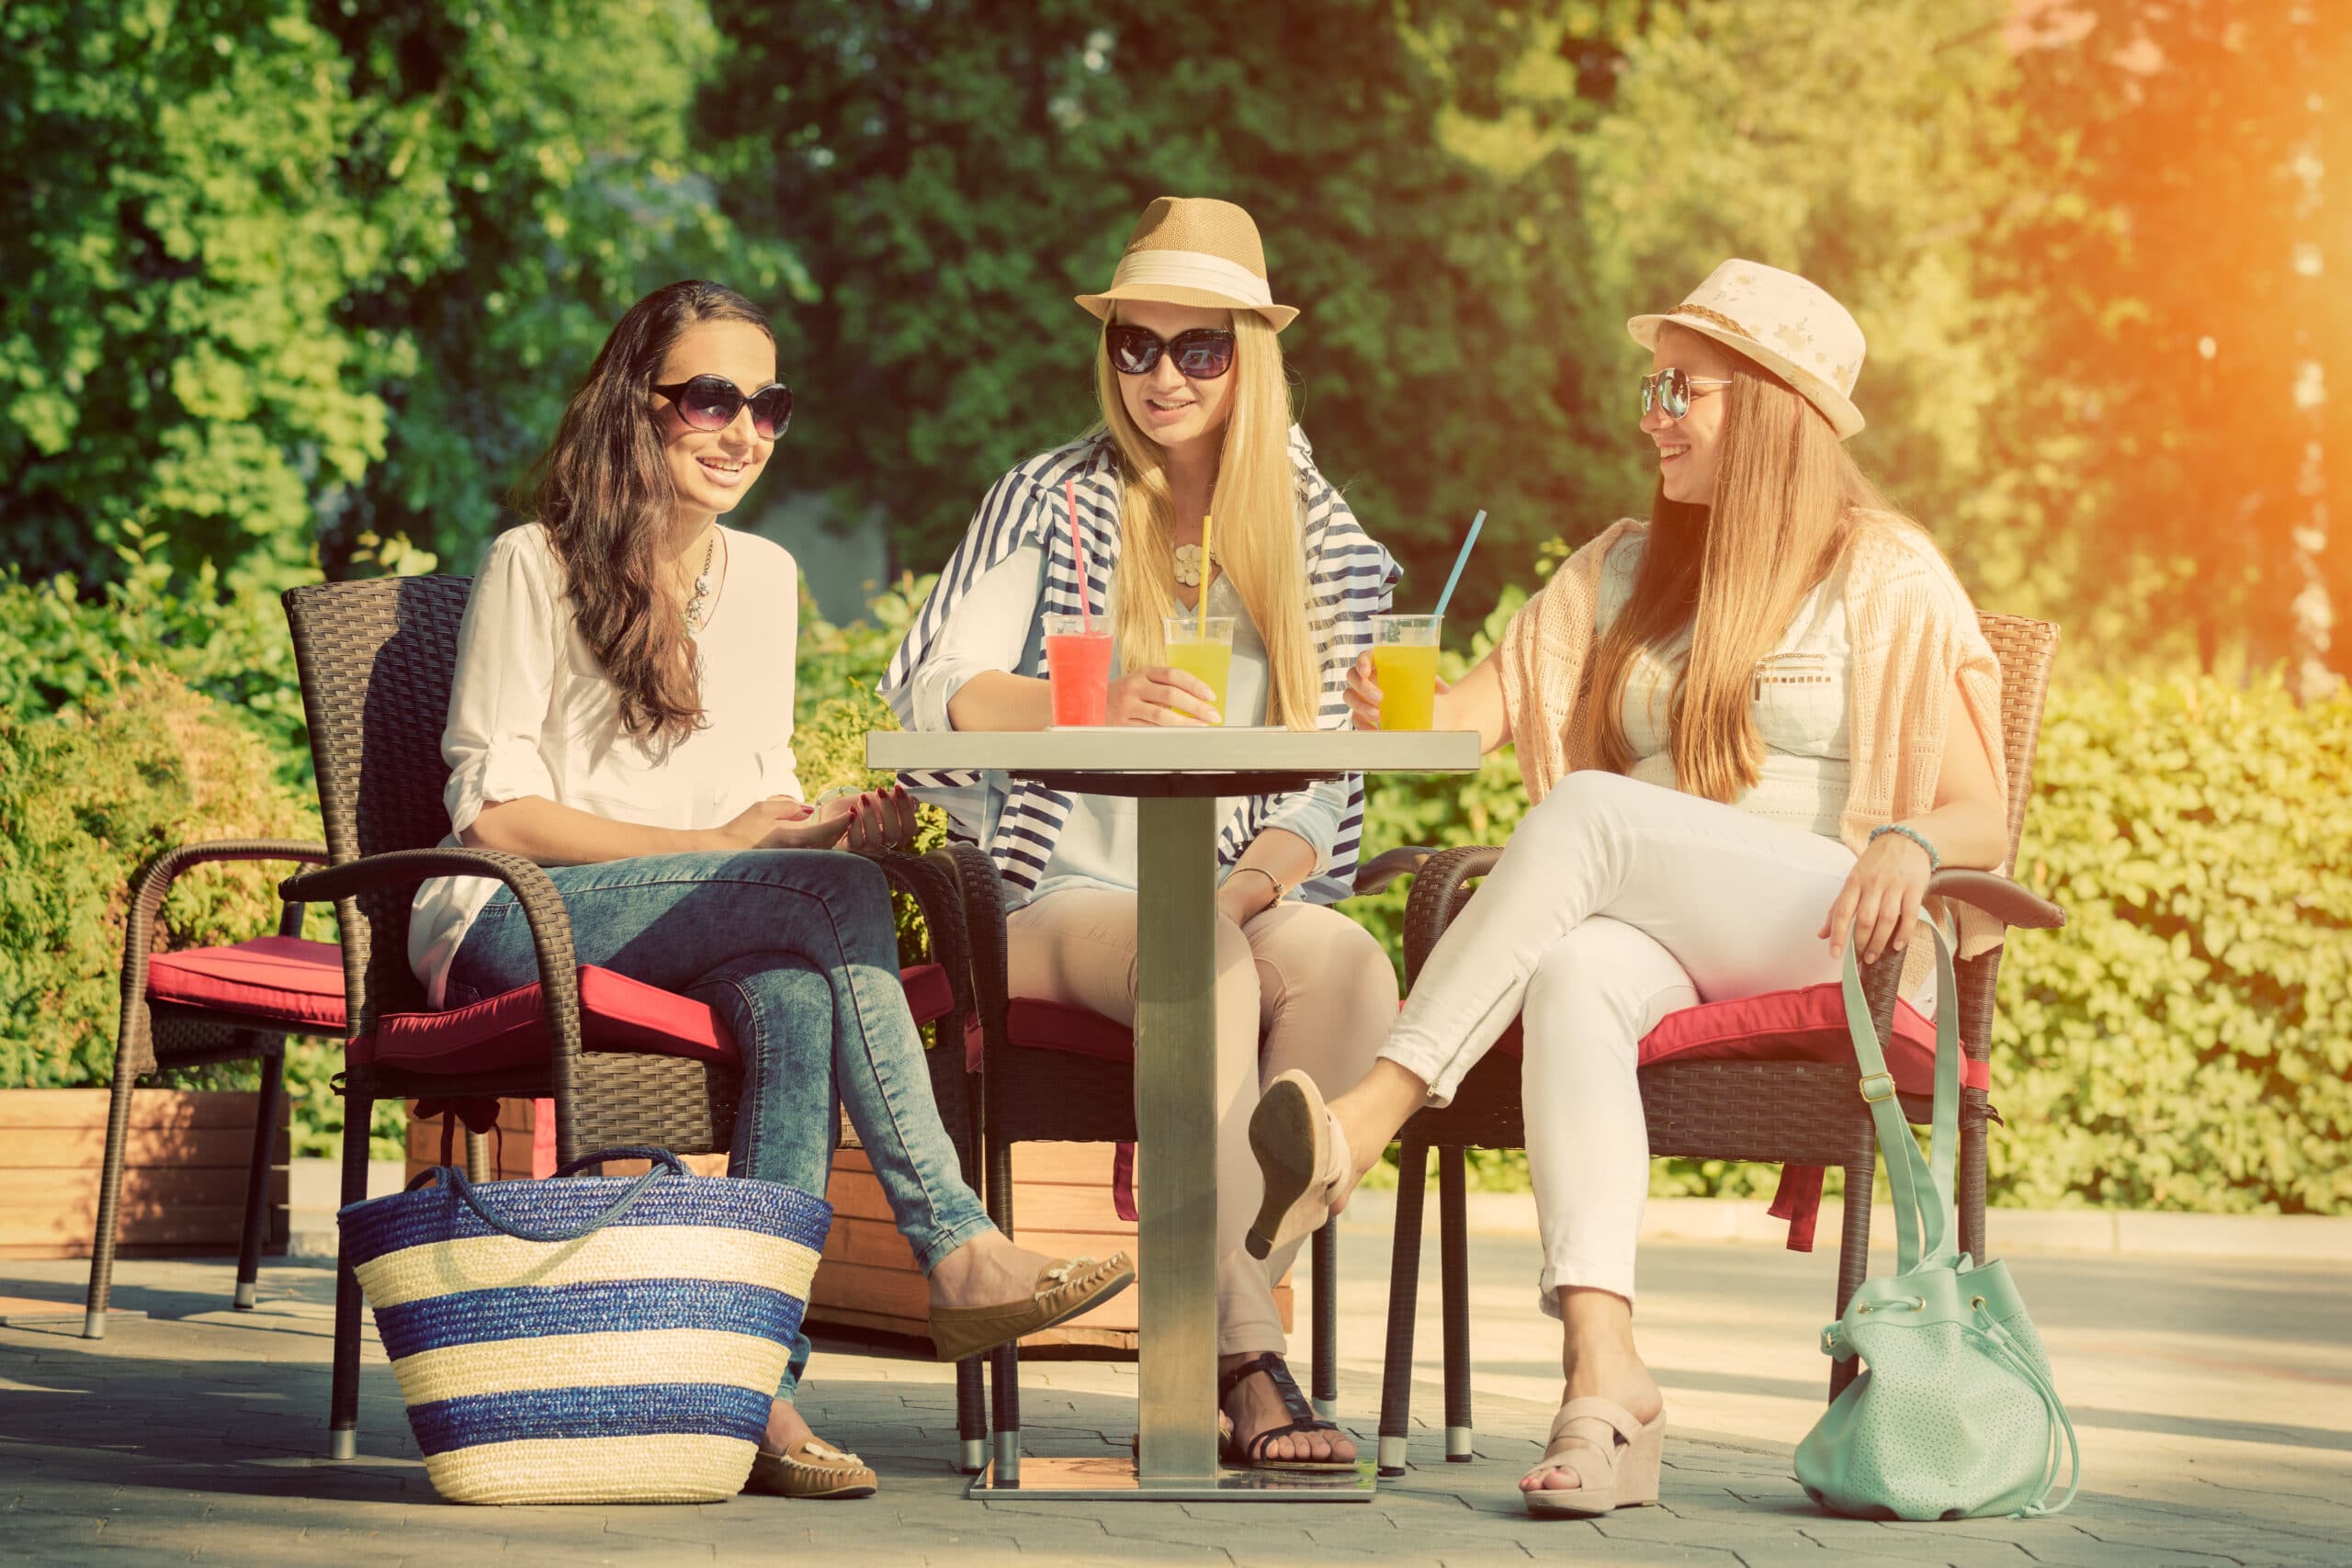 Организованная подруга. Две девушки. Русские жены с подругами на отдыхе в кафе за границей фото.